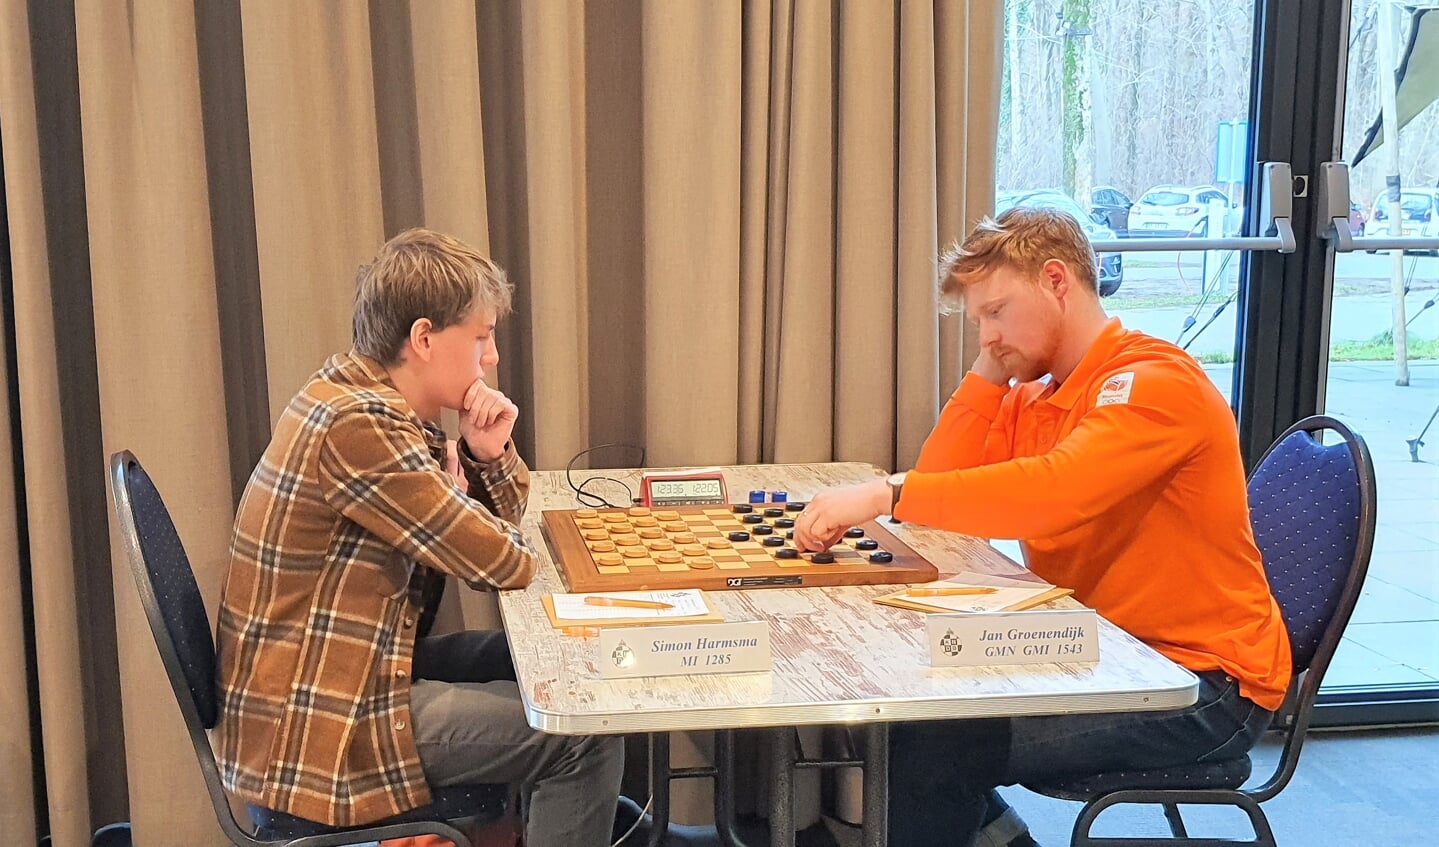 Simon Harmsma (links) en Jan Groenendijk, beiden lid van WSDV, speelden in de eerste ronde tegen elkaar. Groenendijk won de partij.